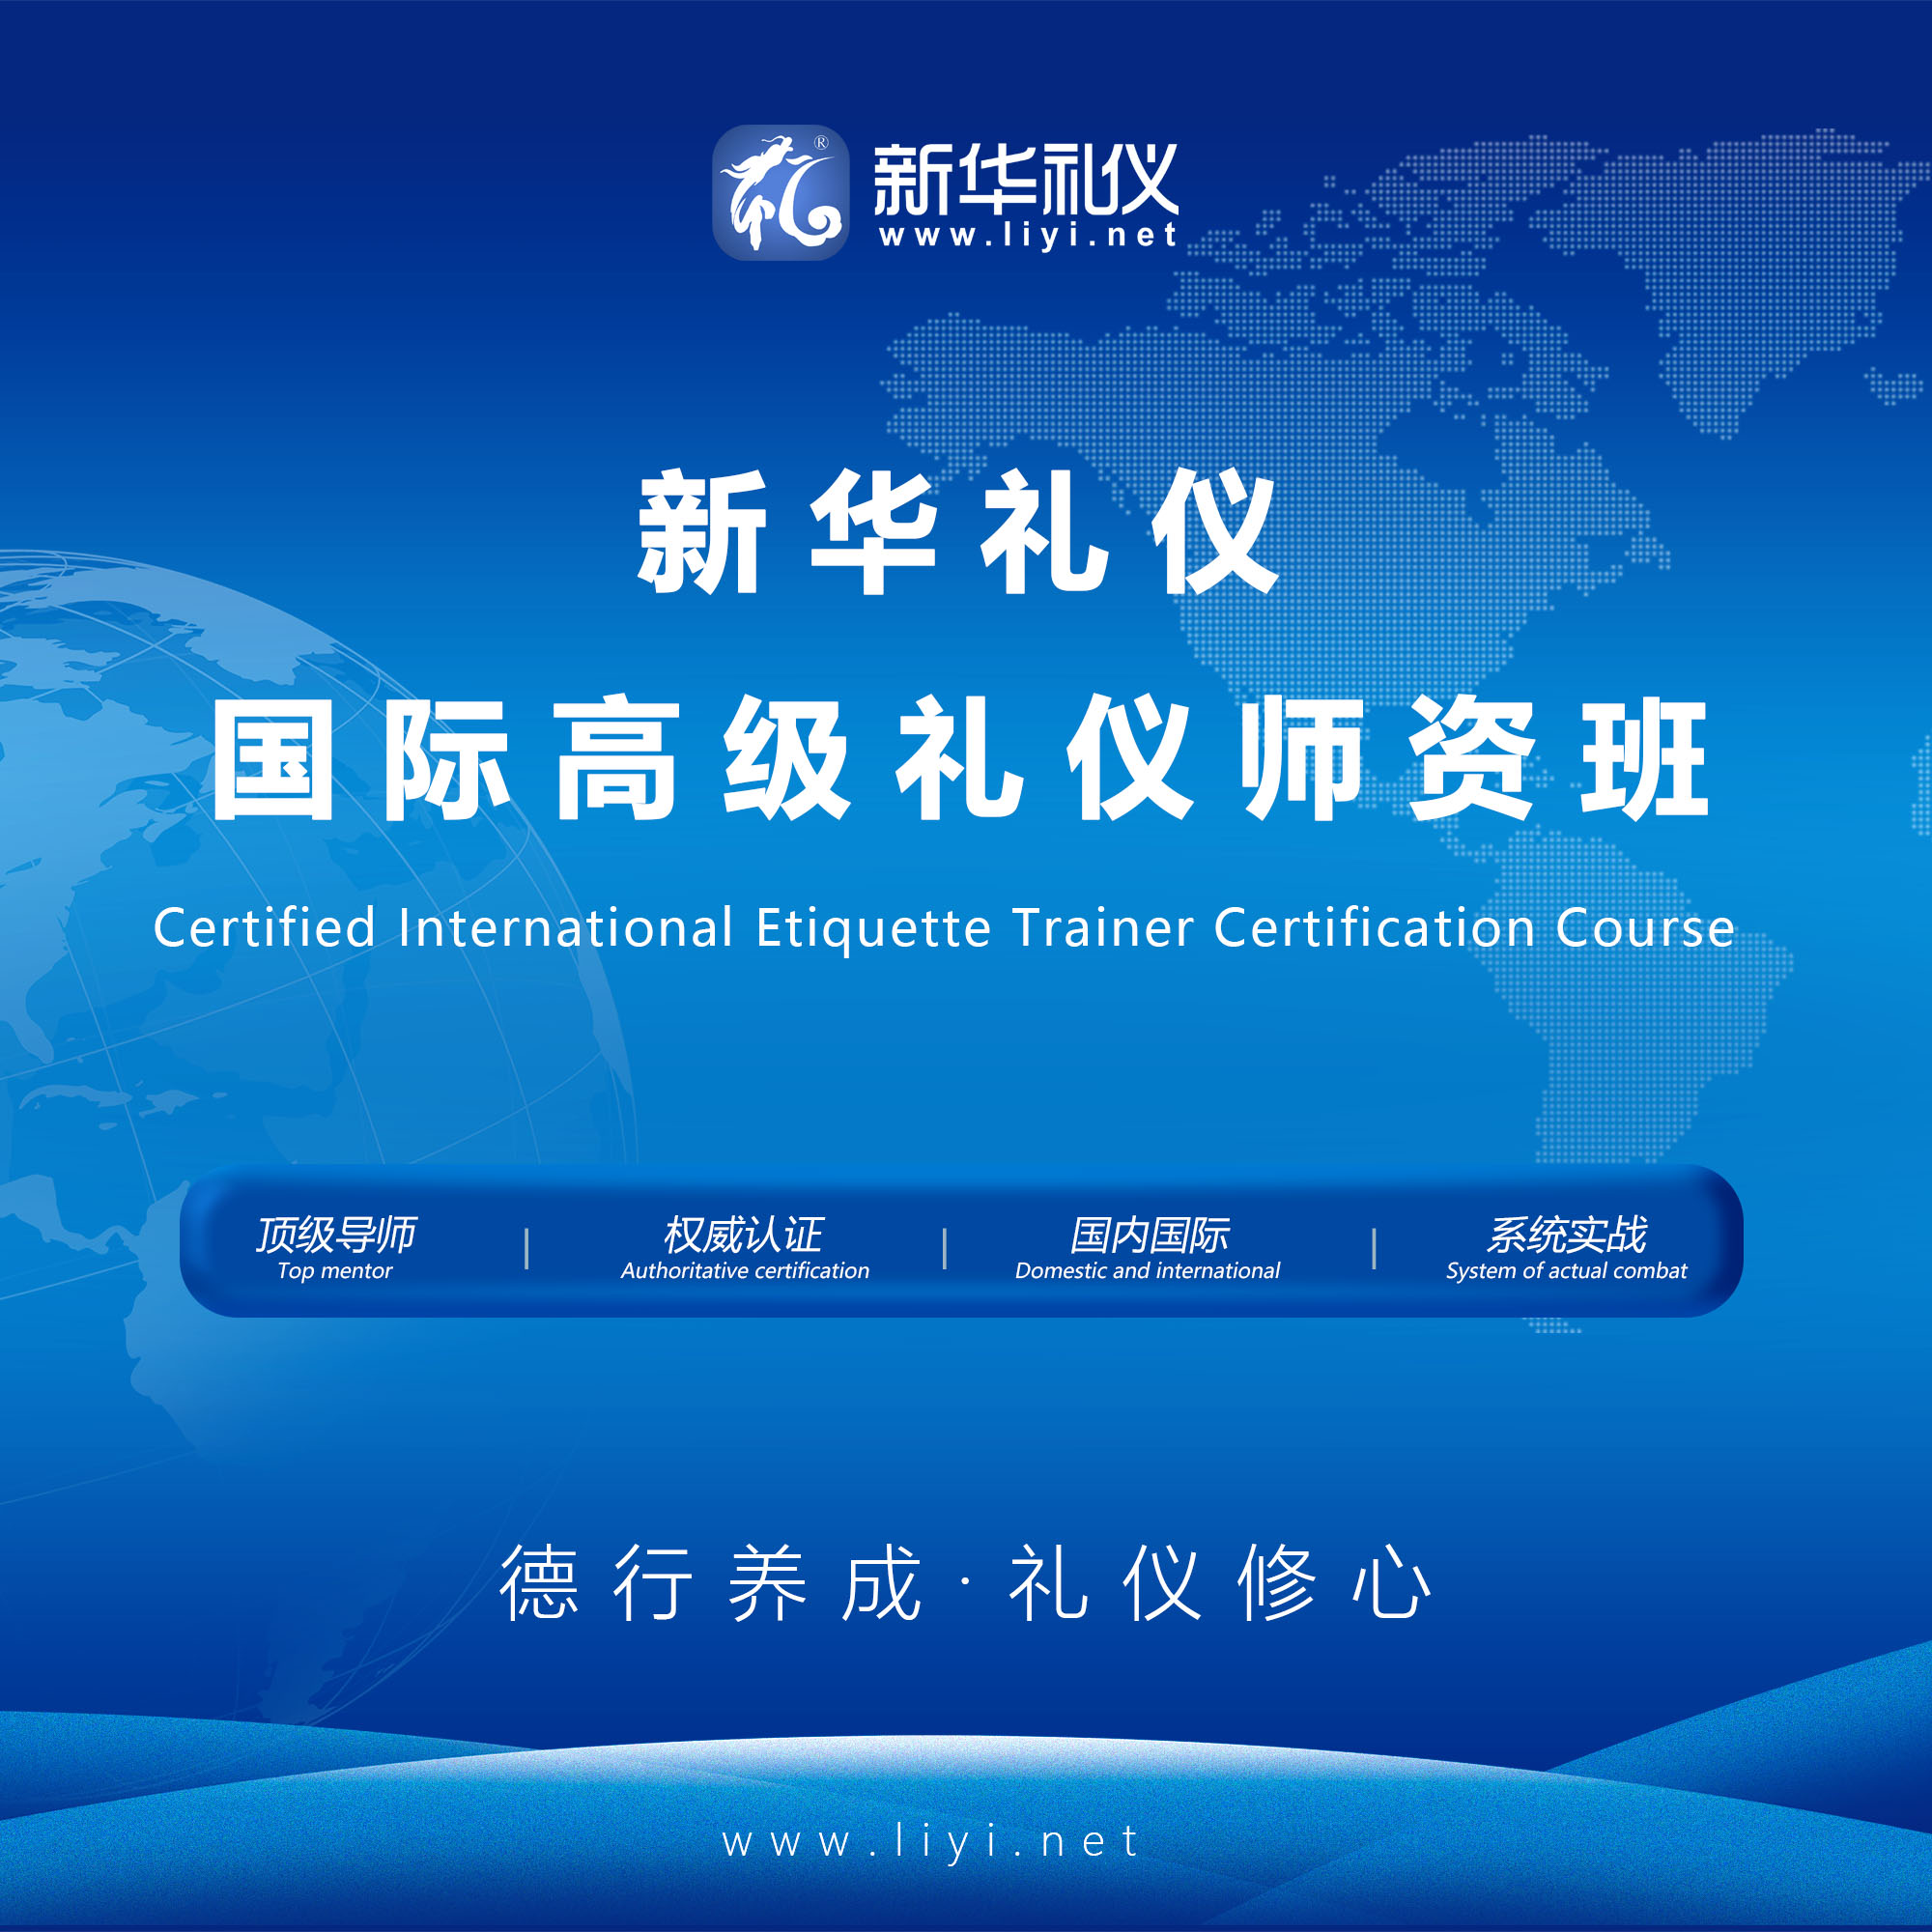 苏州2020年6月25日·上海·新华礼伊《国际注册高级礼仪培训师认证班》